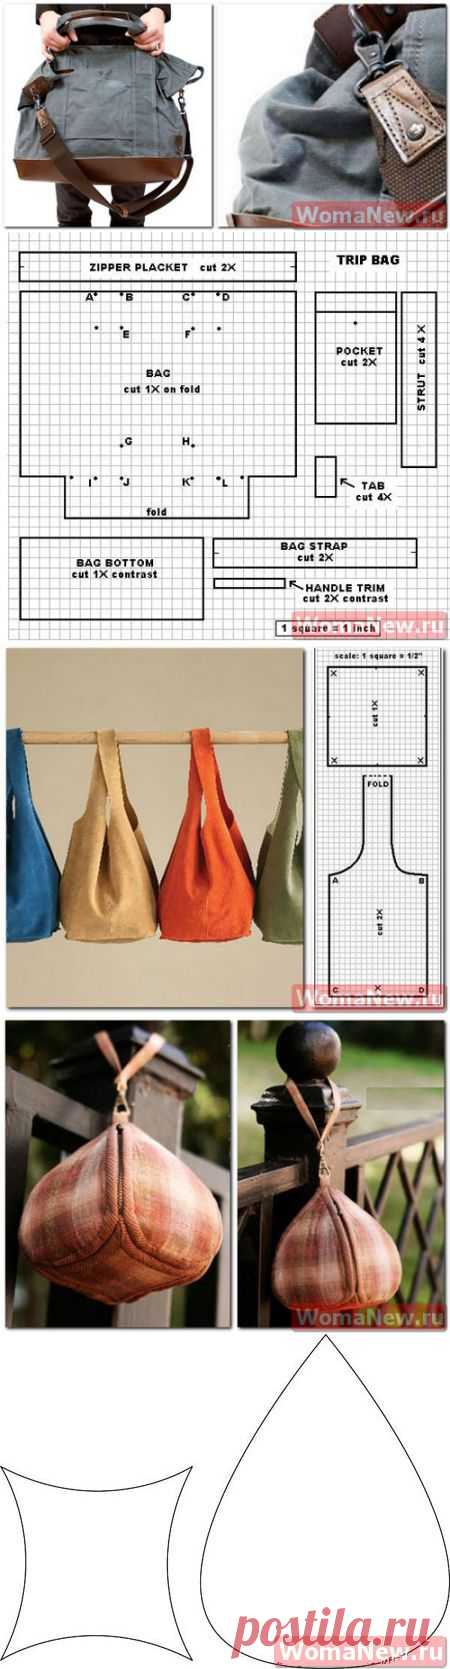 Выкройки сумок из ткани | WomaNew.ru - уроки кройки и шитья!